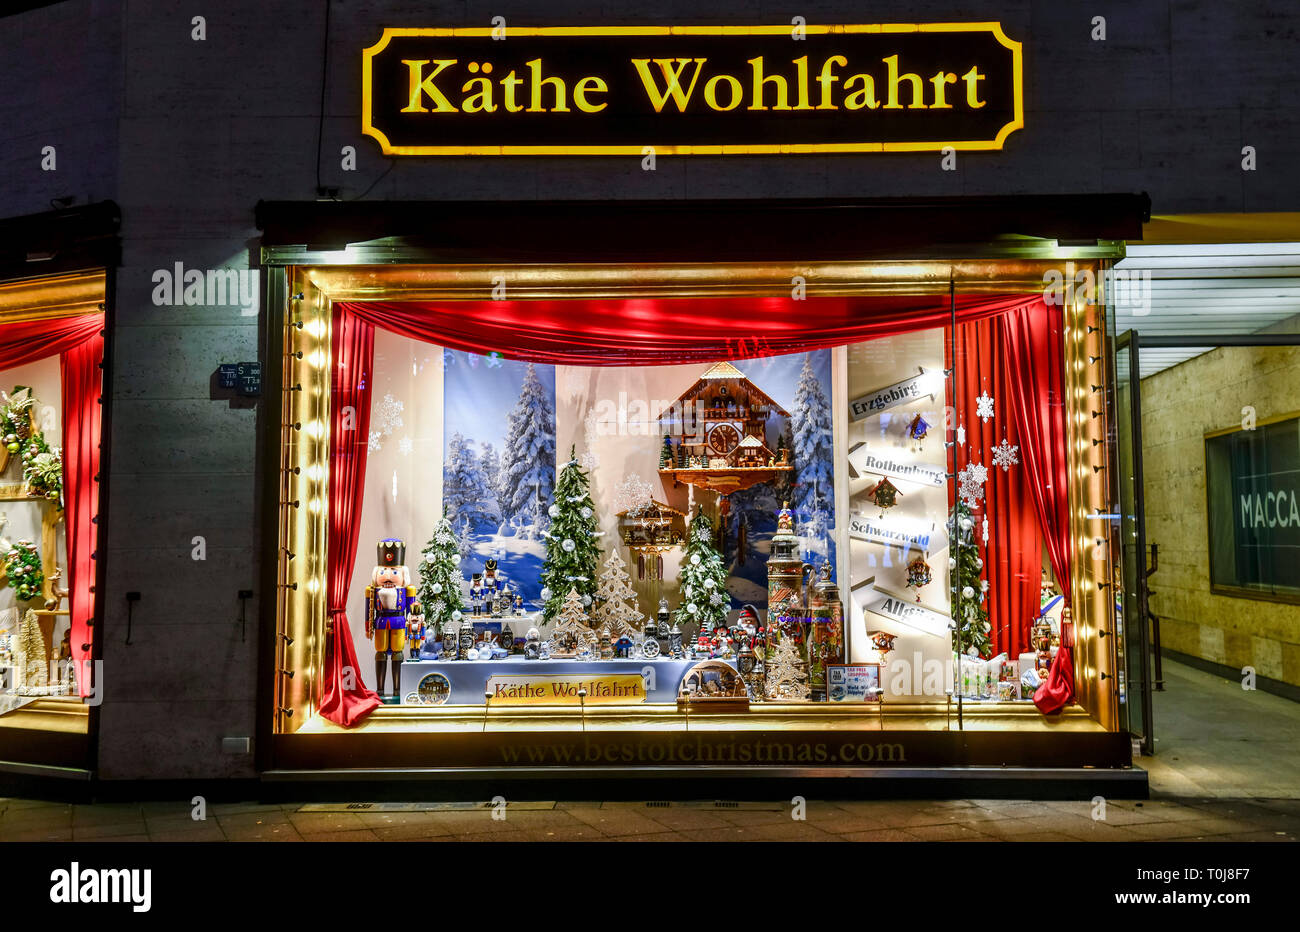 Kate bienestar, Kurfürstendamm, Charlottenburg, Berlín, Alemania, Käthe Wohlfahrt puso, Deutschland Foto de stock